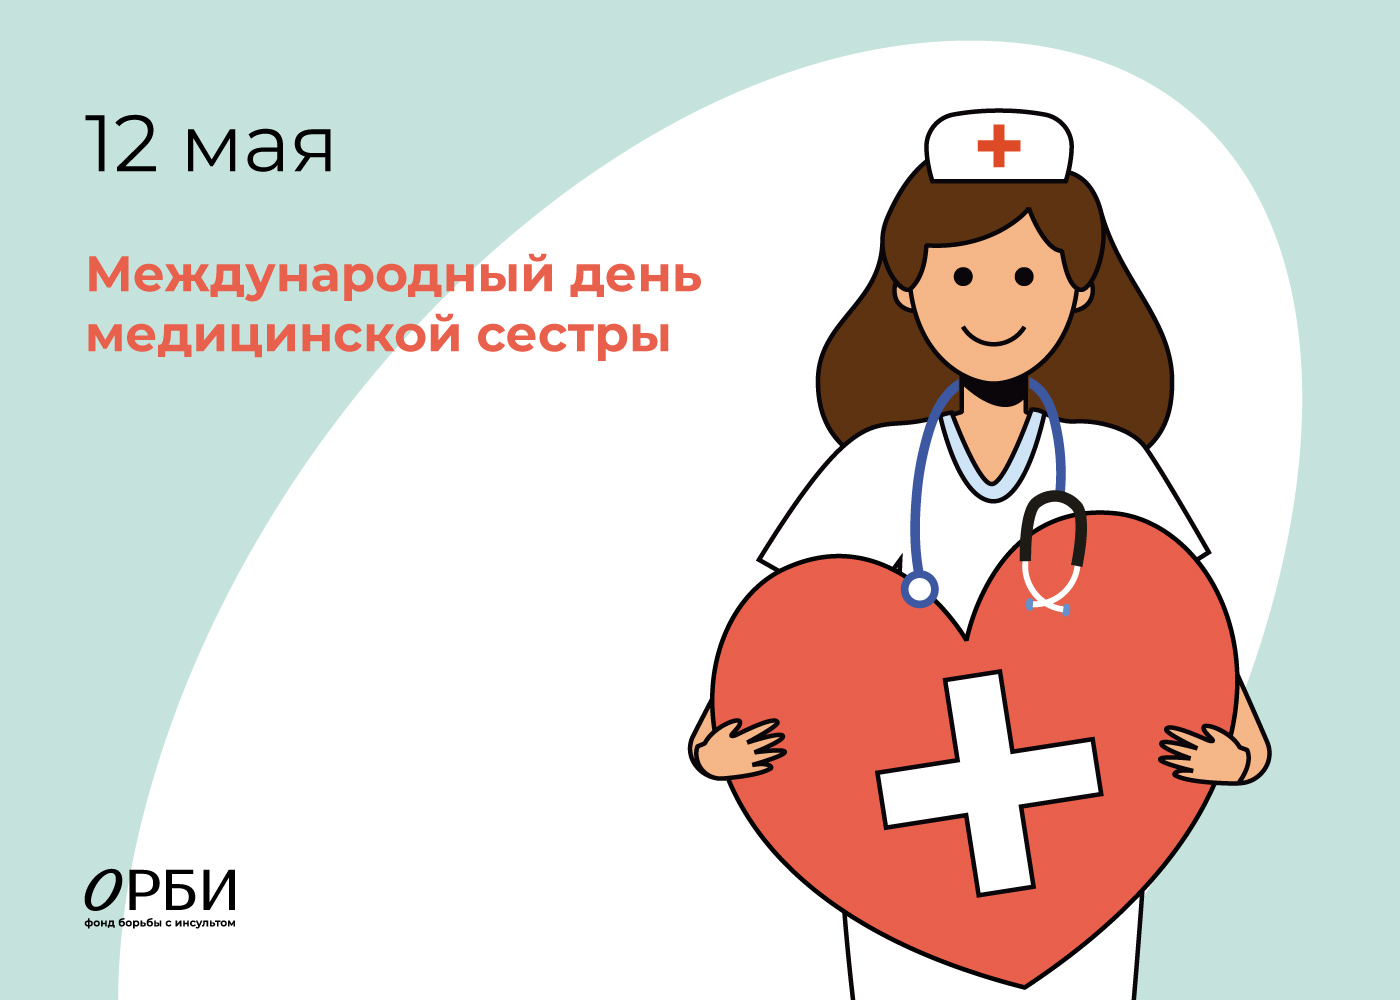 Международный день медицинской сестры отмечается